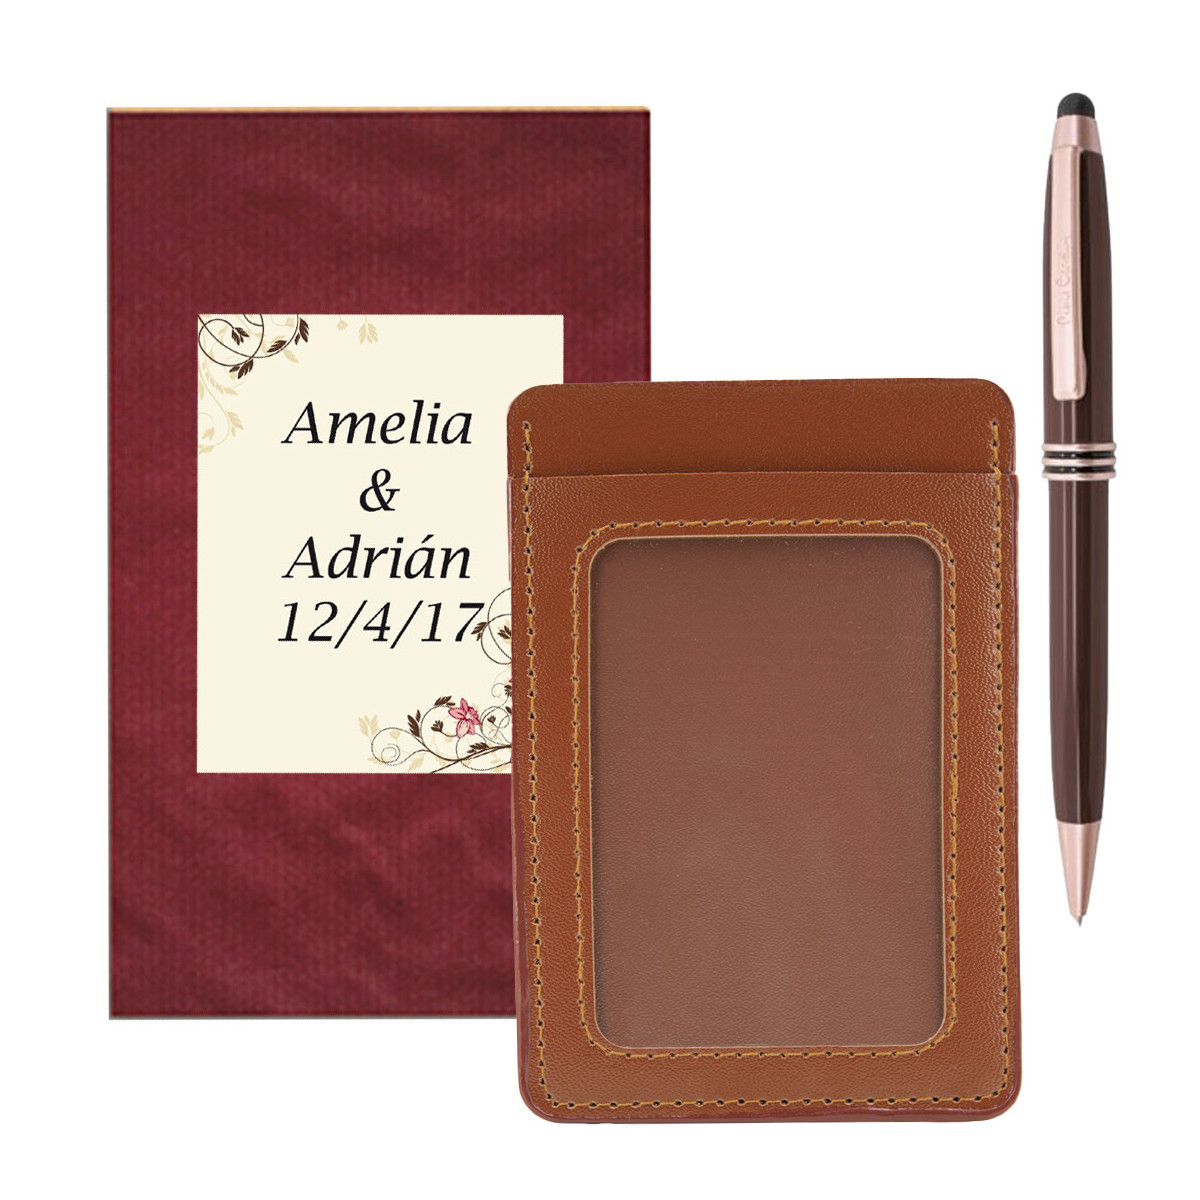 Porte cartes avec fenêtre marron avec stylo pierre cardin présenté dans une enveloppe et un autocollant de mariage